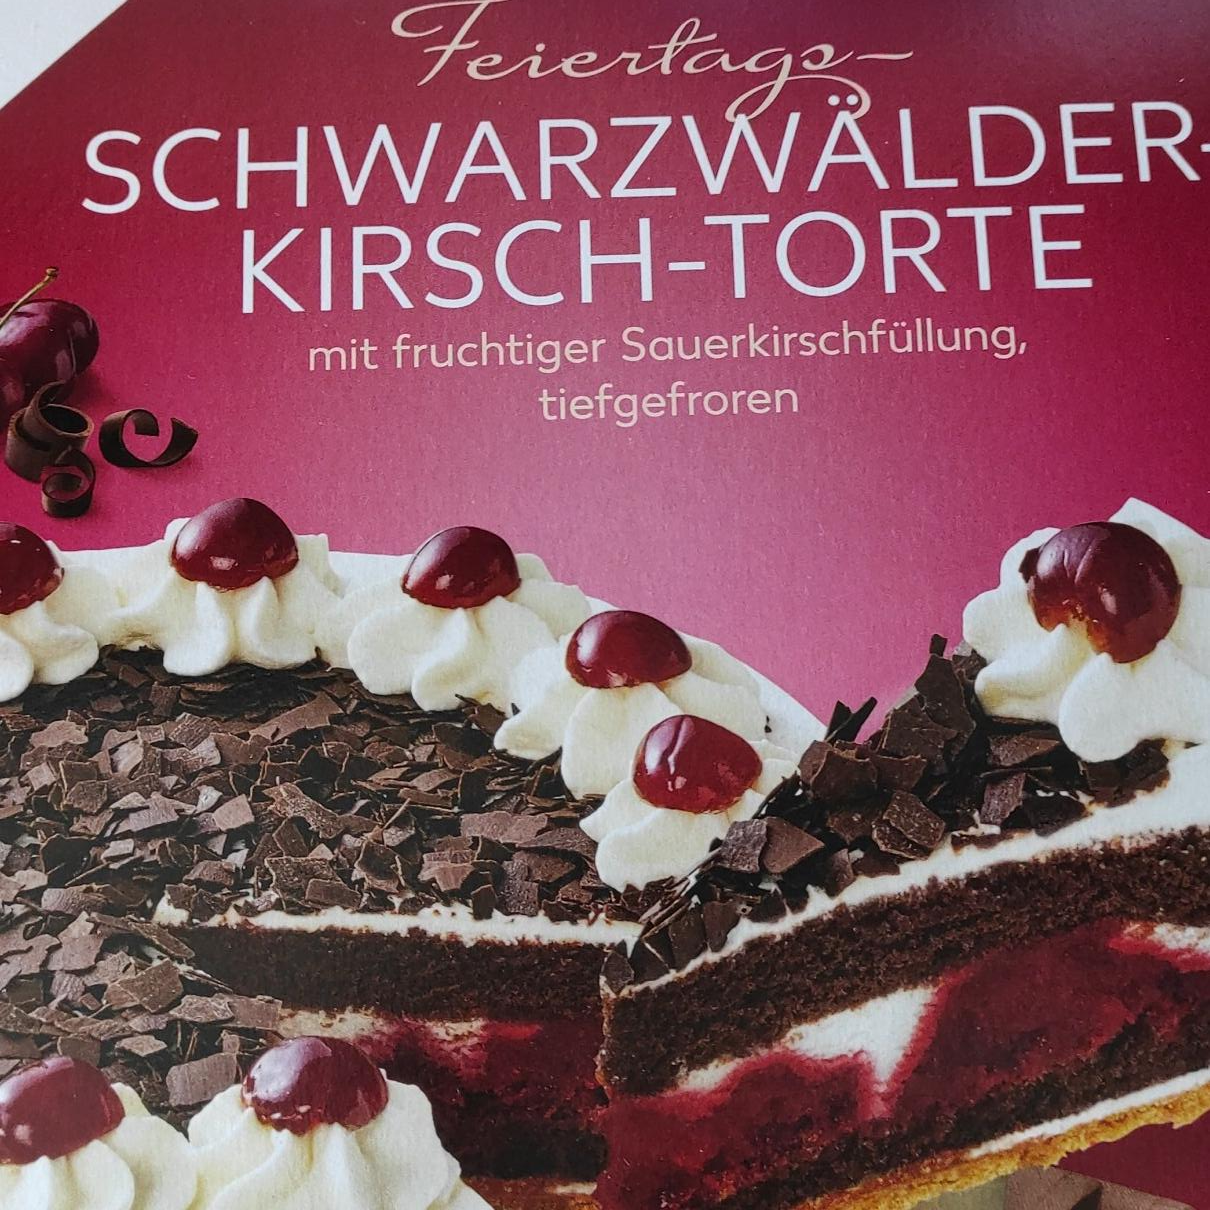 Képek - Schwarzwälder kirsch - torte Feiertags